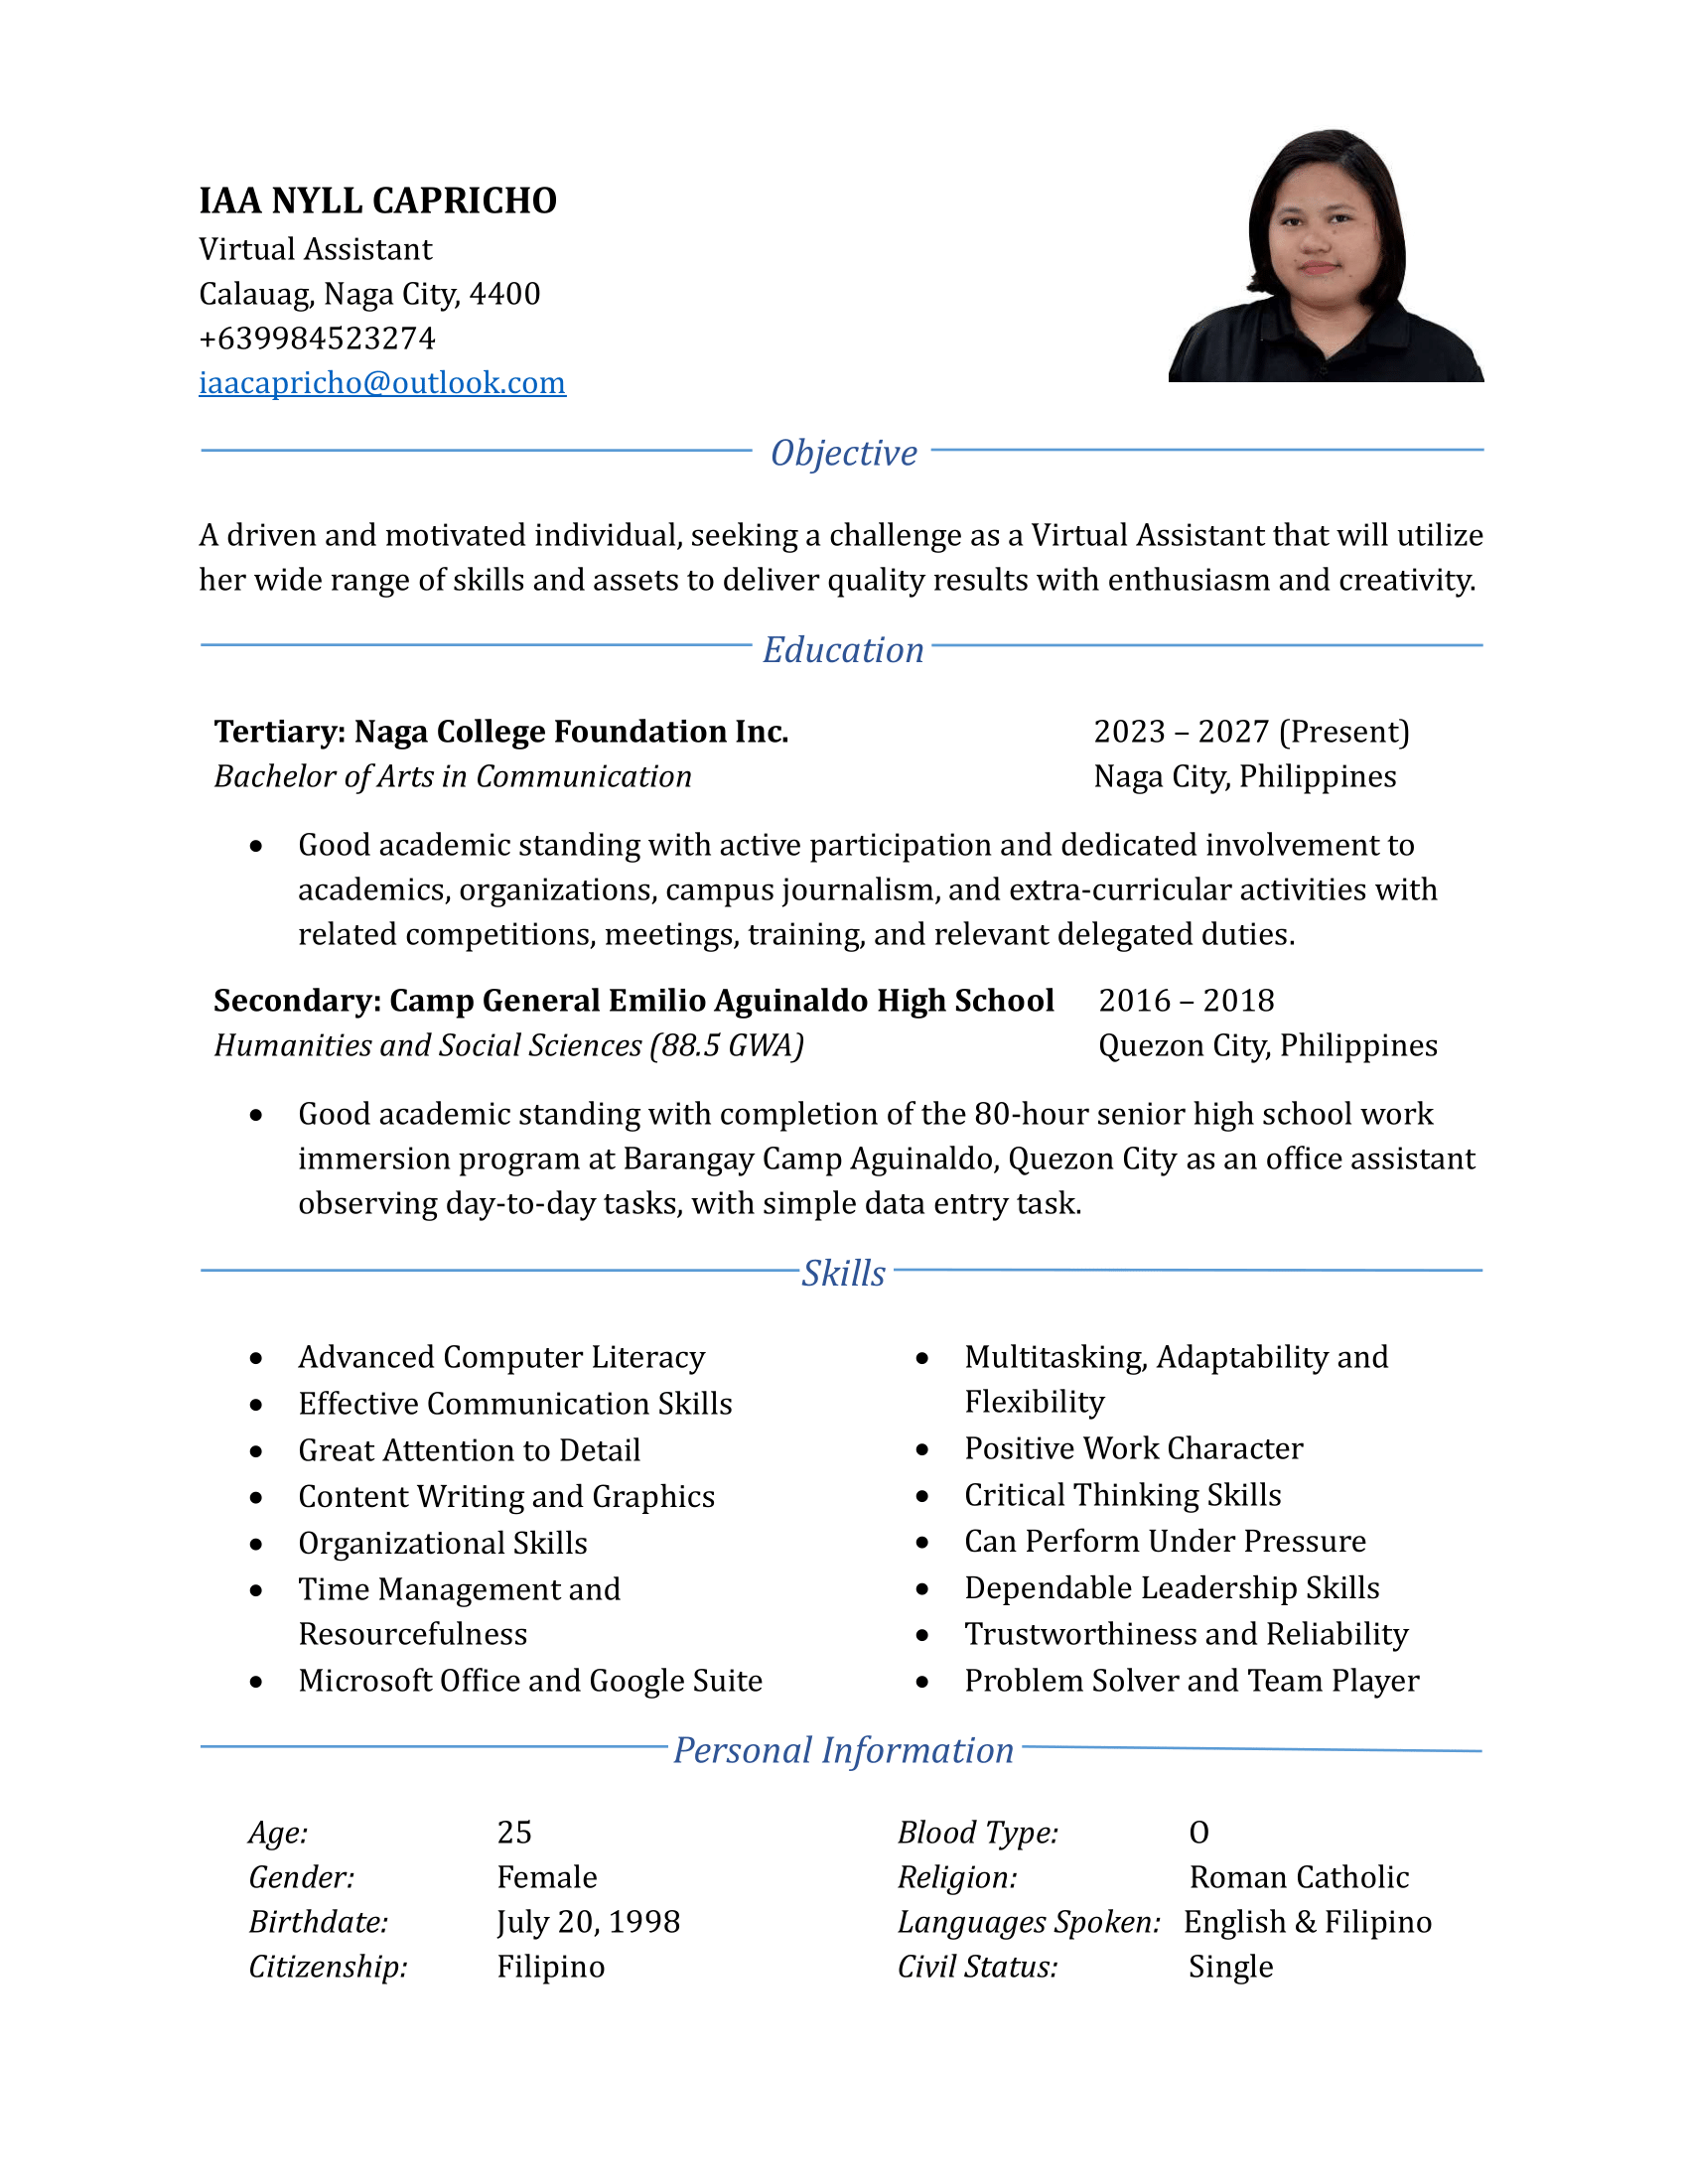 Iaa Nyll's Resume